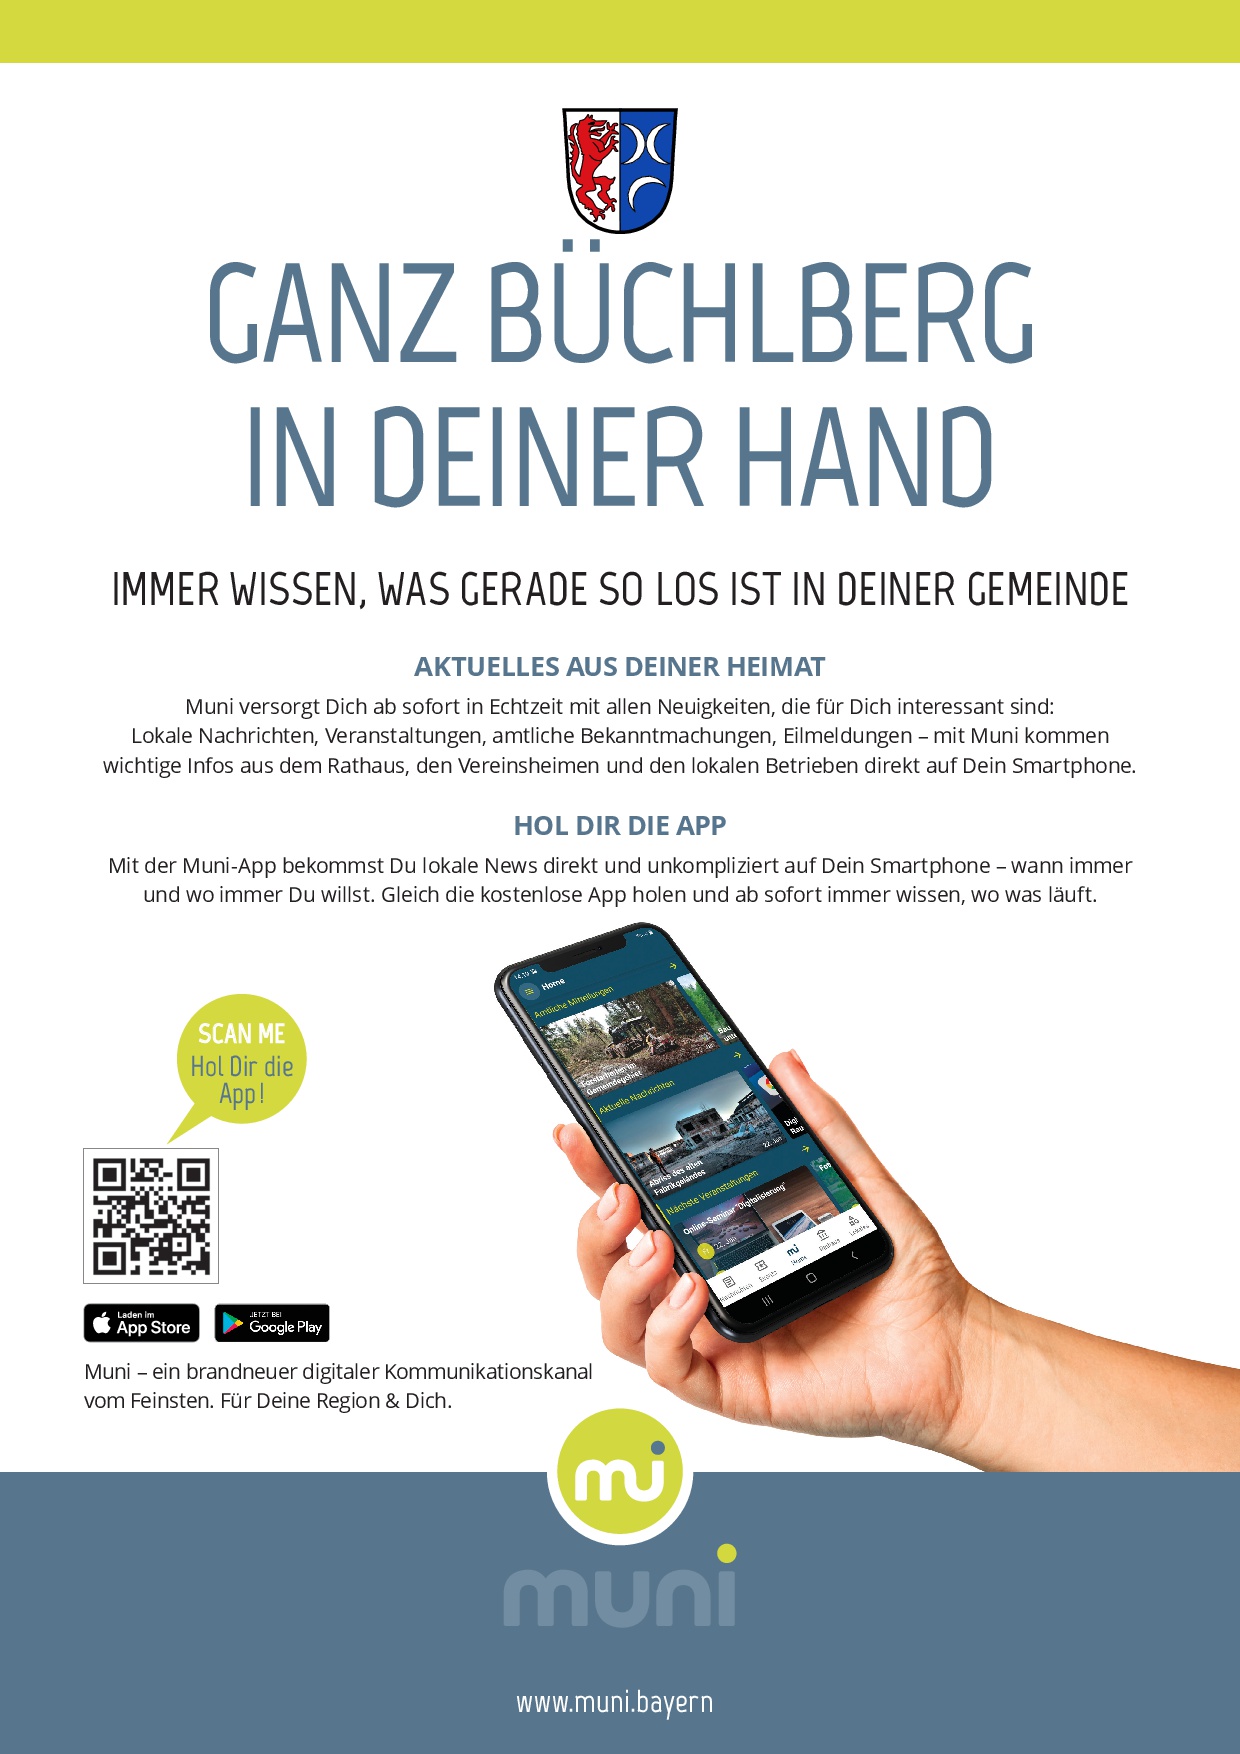 Ganz Büchlberg in deiner Hand - Hol dir die Muni-App